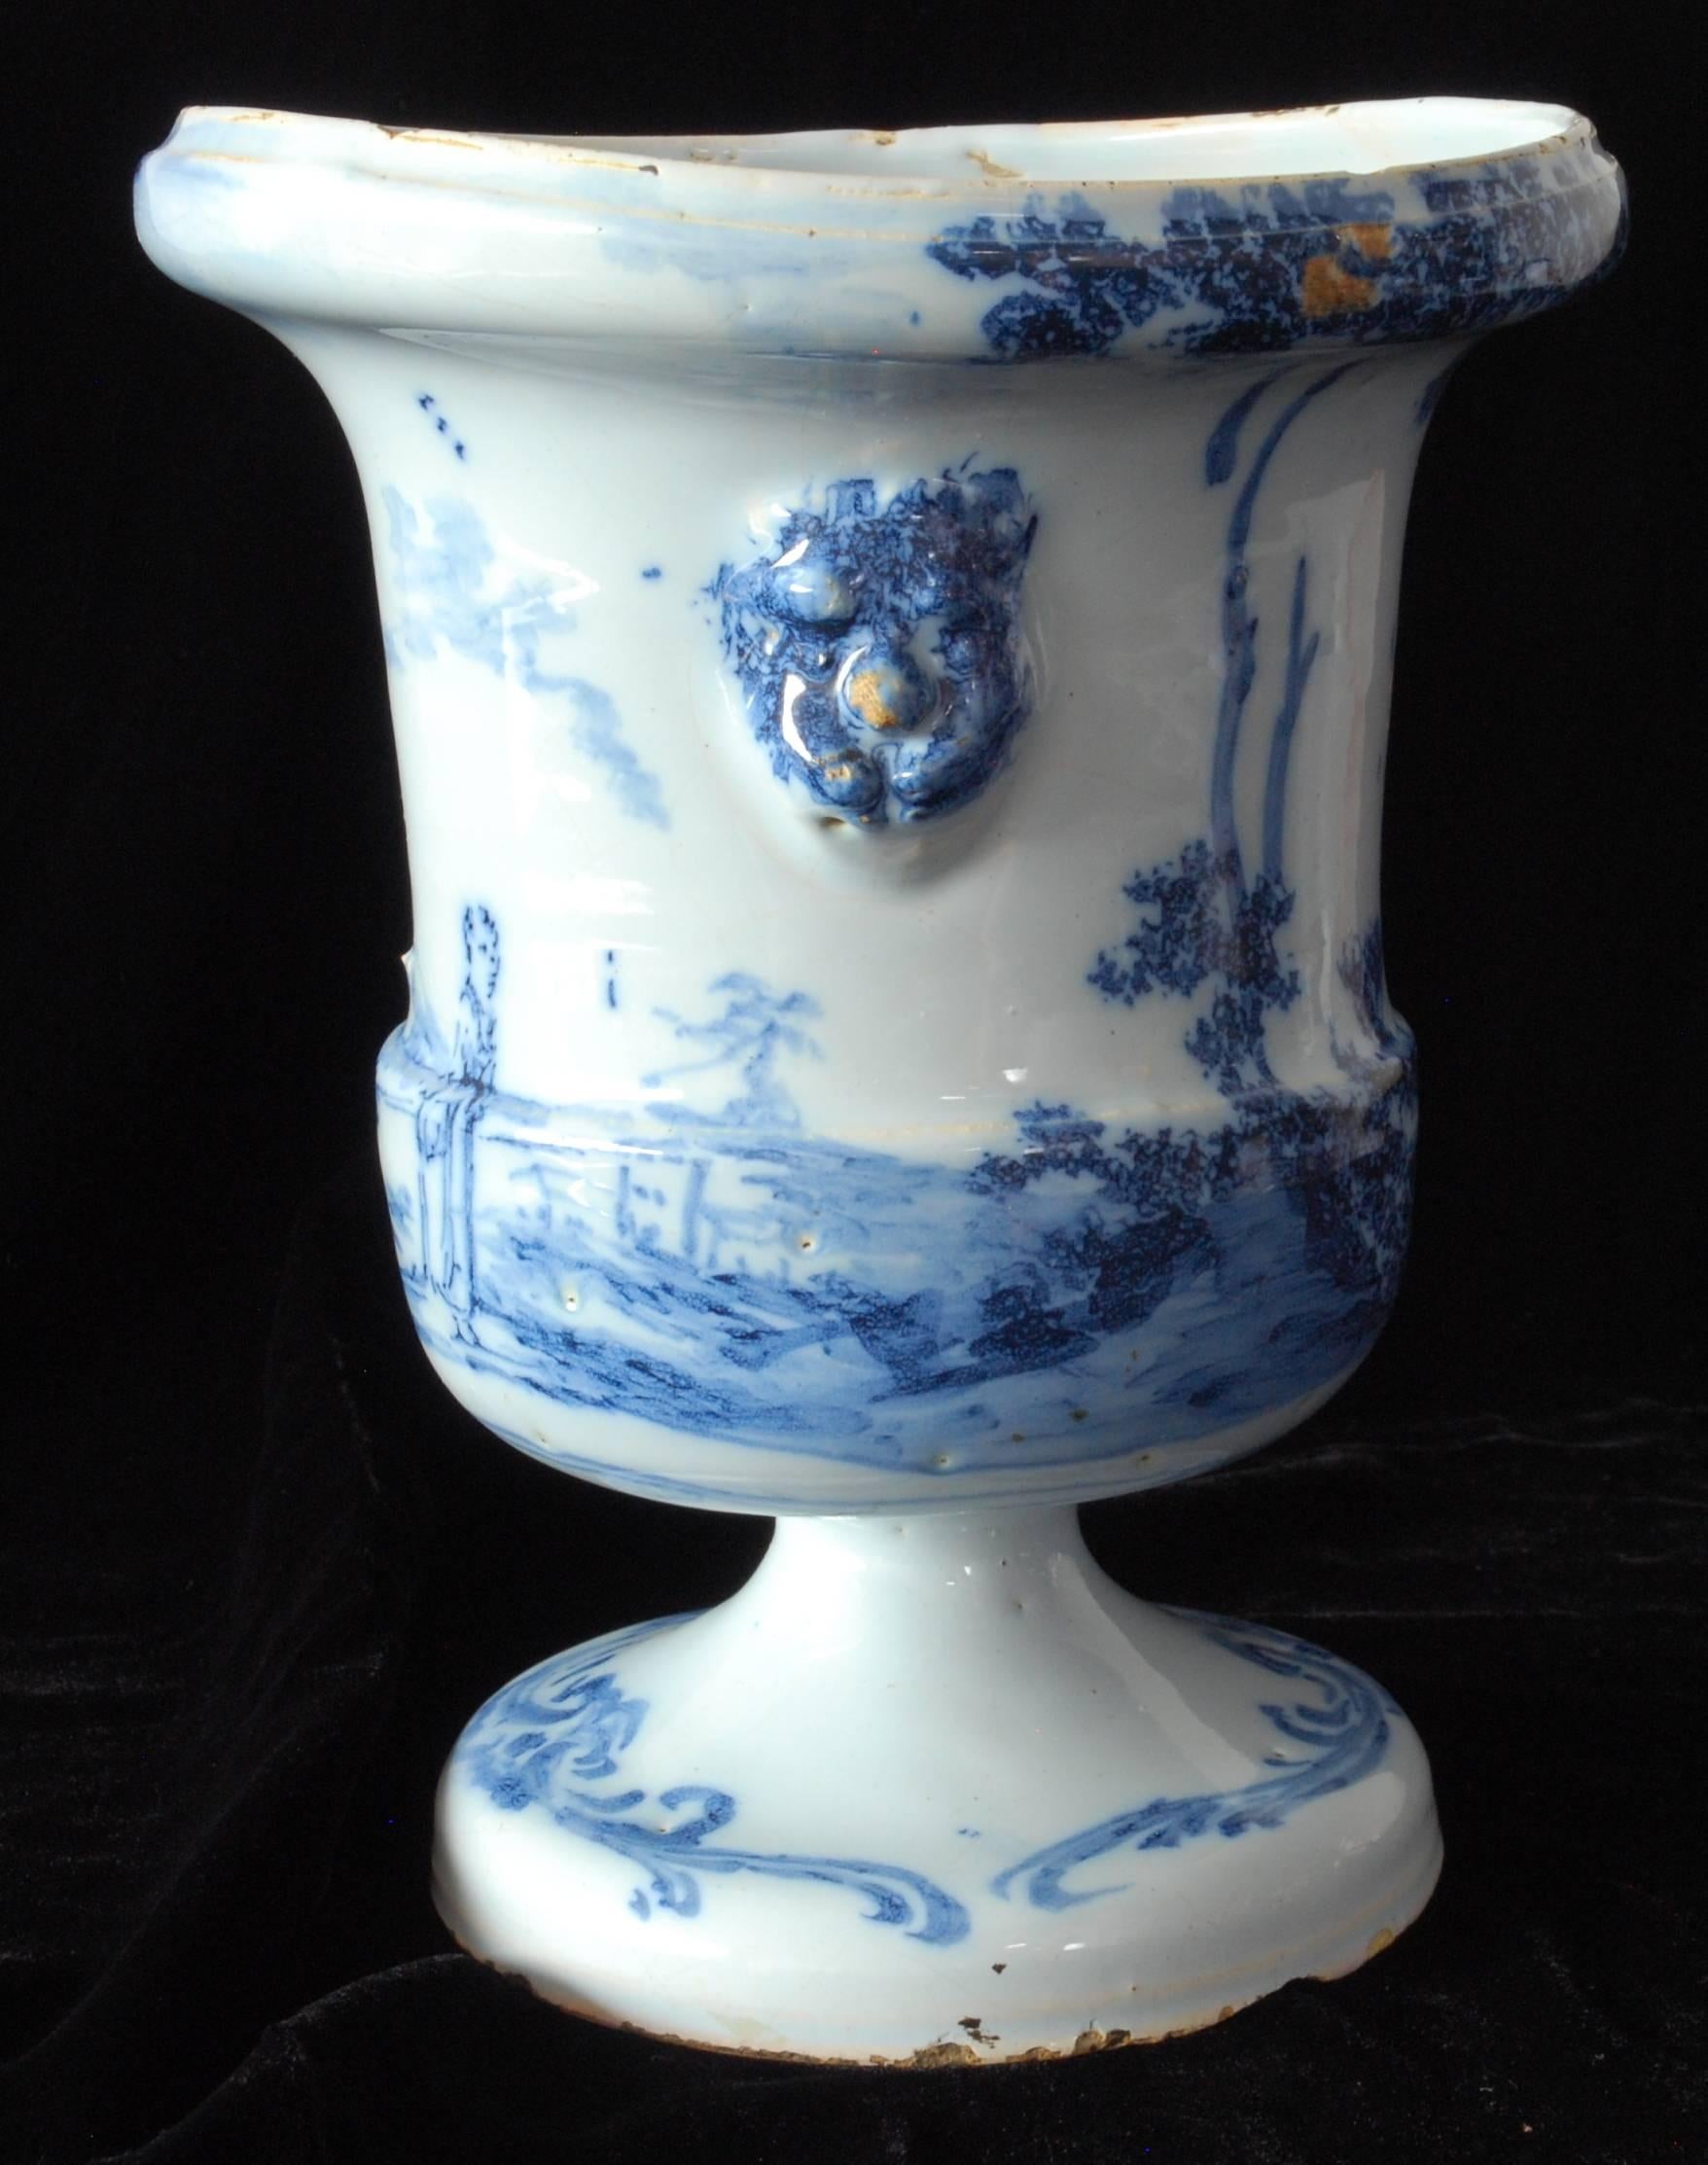 Eine seltene, große Vase in klassischer Form, verziert mit Figuren in einer Landschaft. Große Stücke aus Delfter Porzellan werden nicht oft gefunden.

Siehe CIRC 43-1963 in den V&A für ein ähnliches Beispiel.

